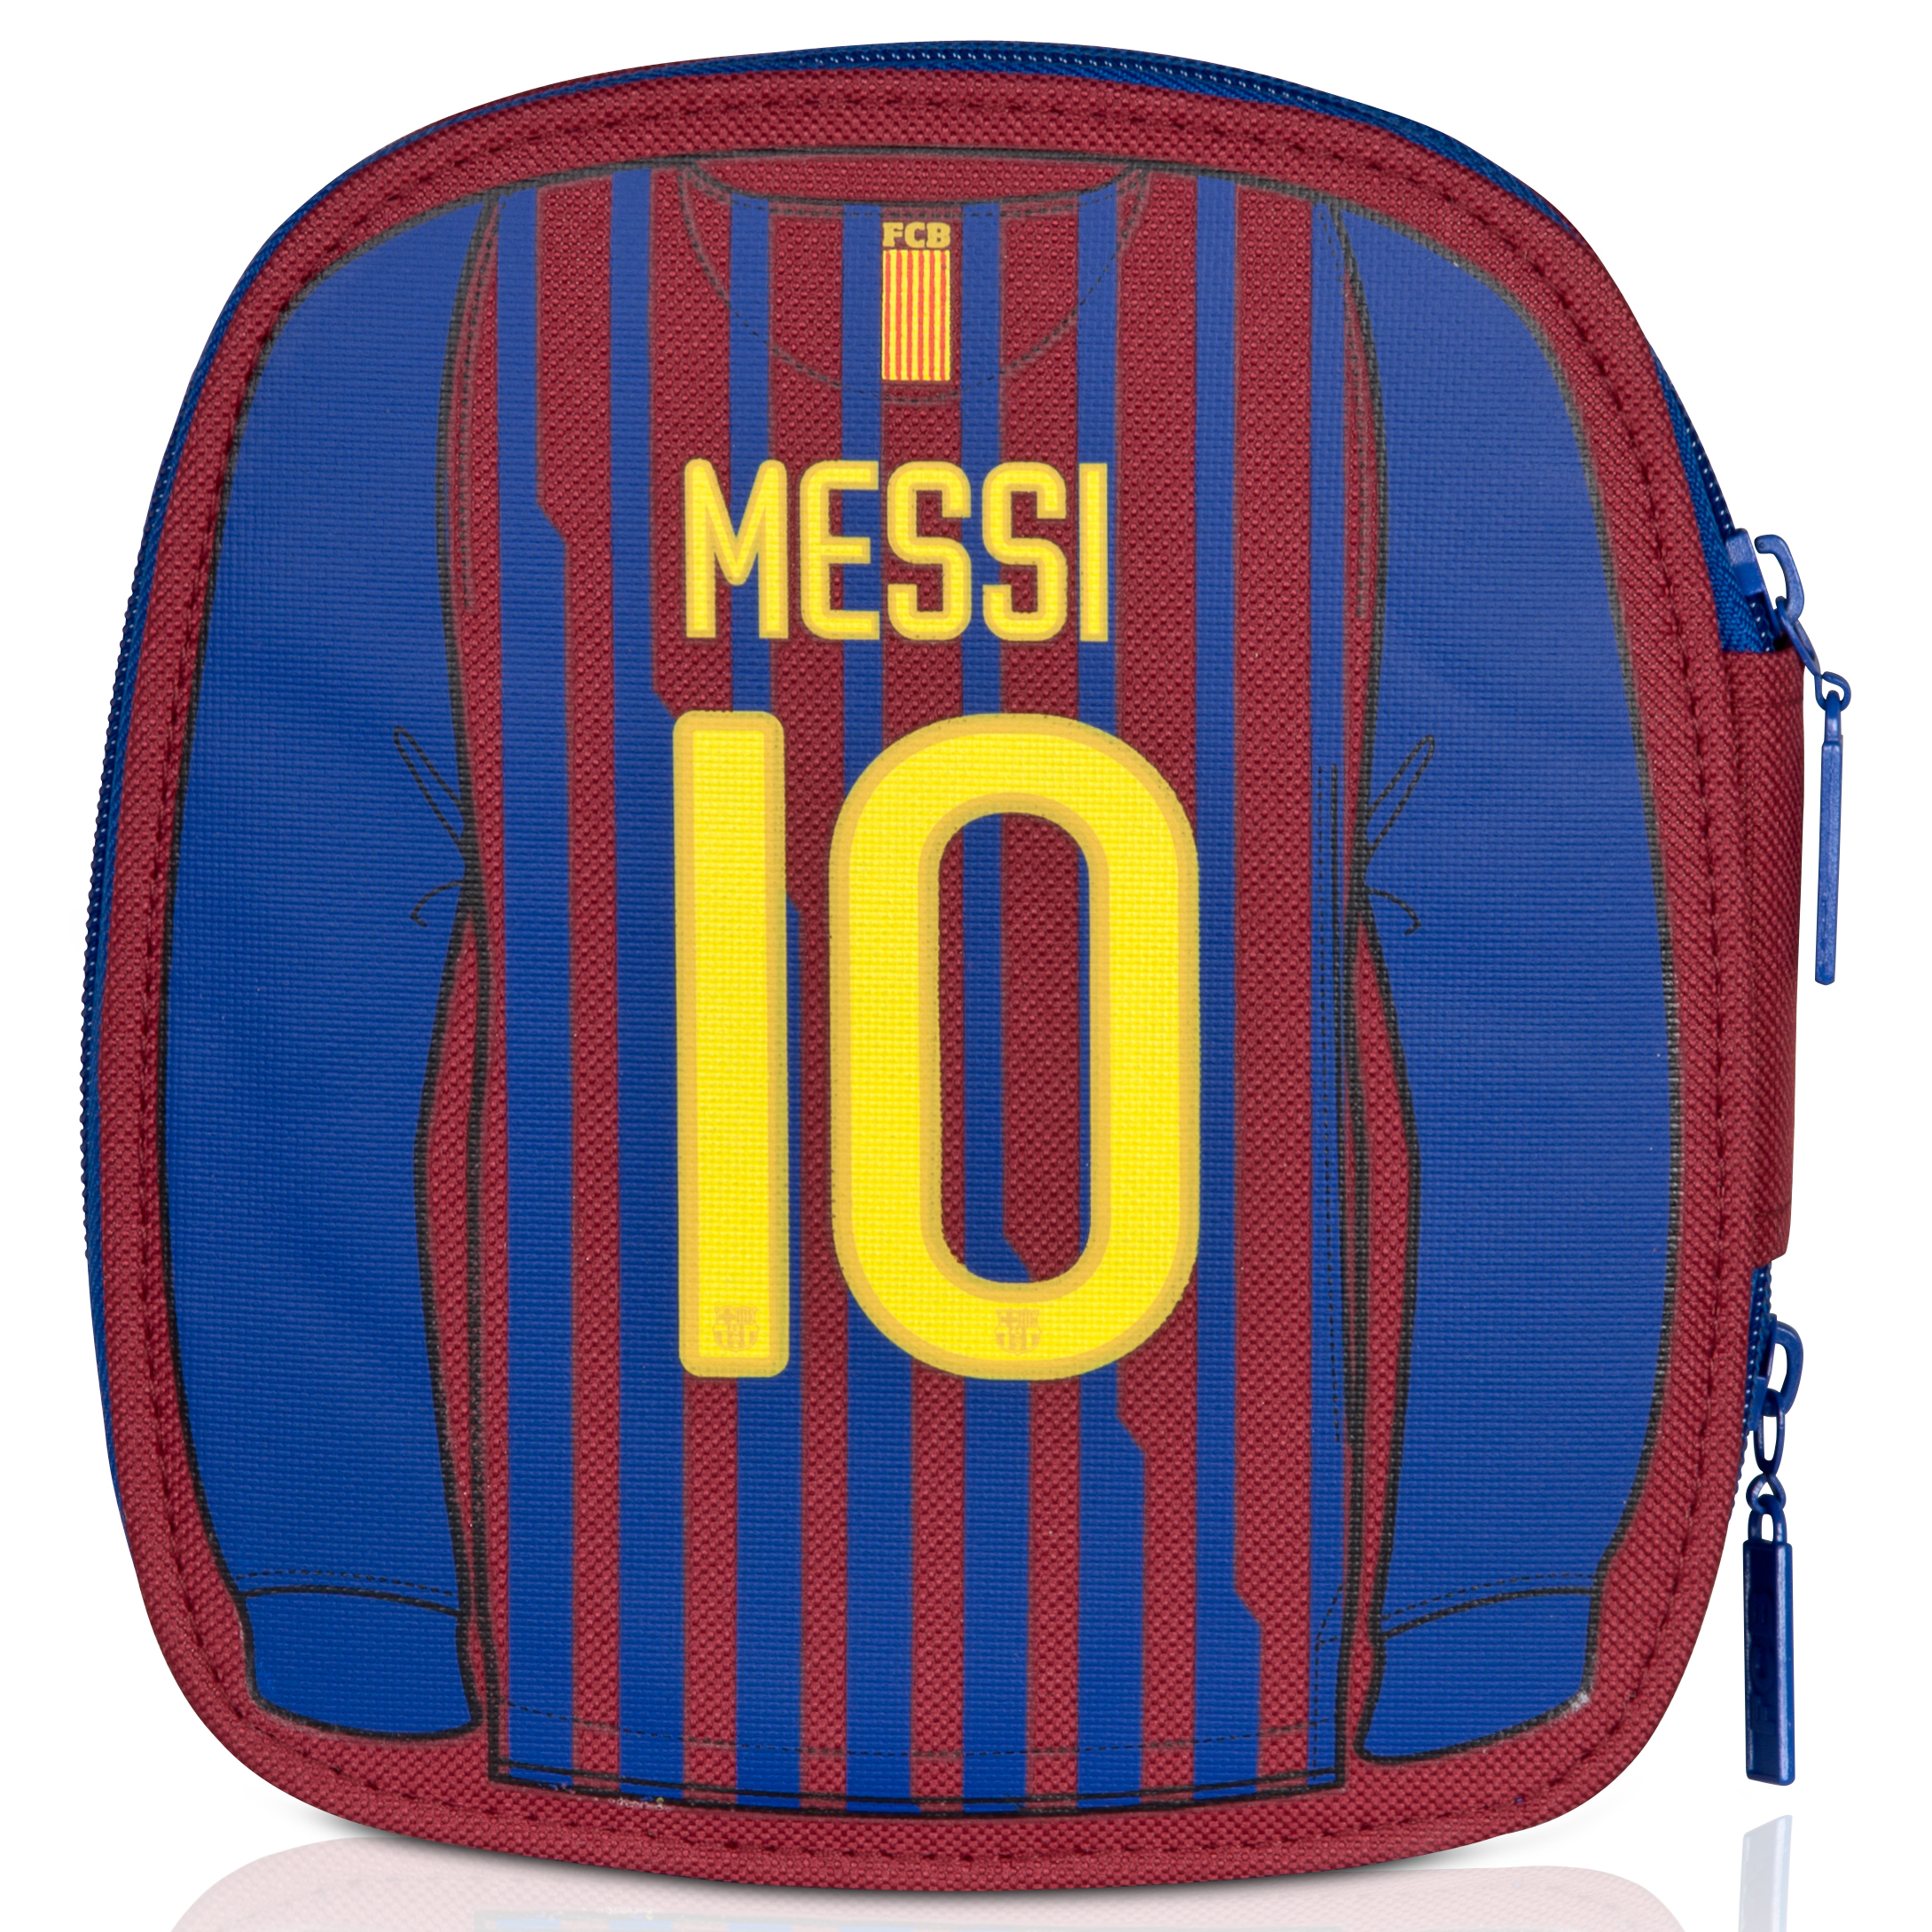 Estoig escolar complert del FC Barcelona - Messi